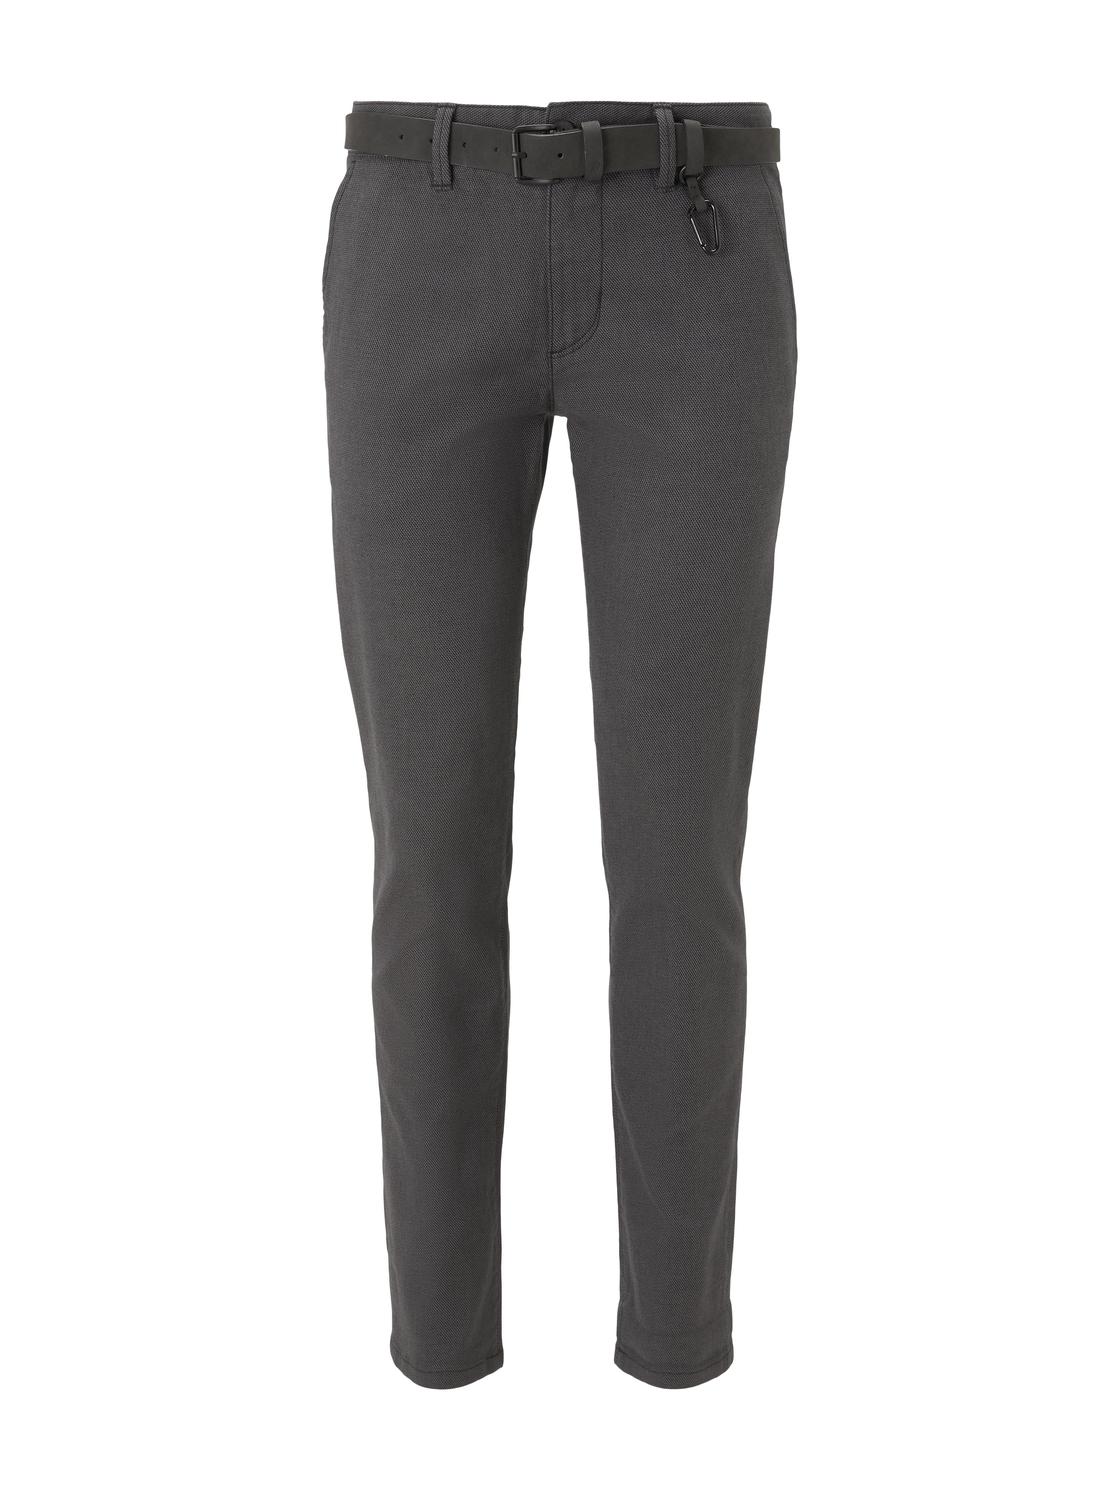 Тканевые брюки TOM TAILOR Denim Stoff/Chino Chino mit Gürtel regular/straight, серый